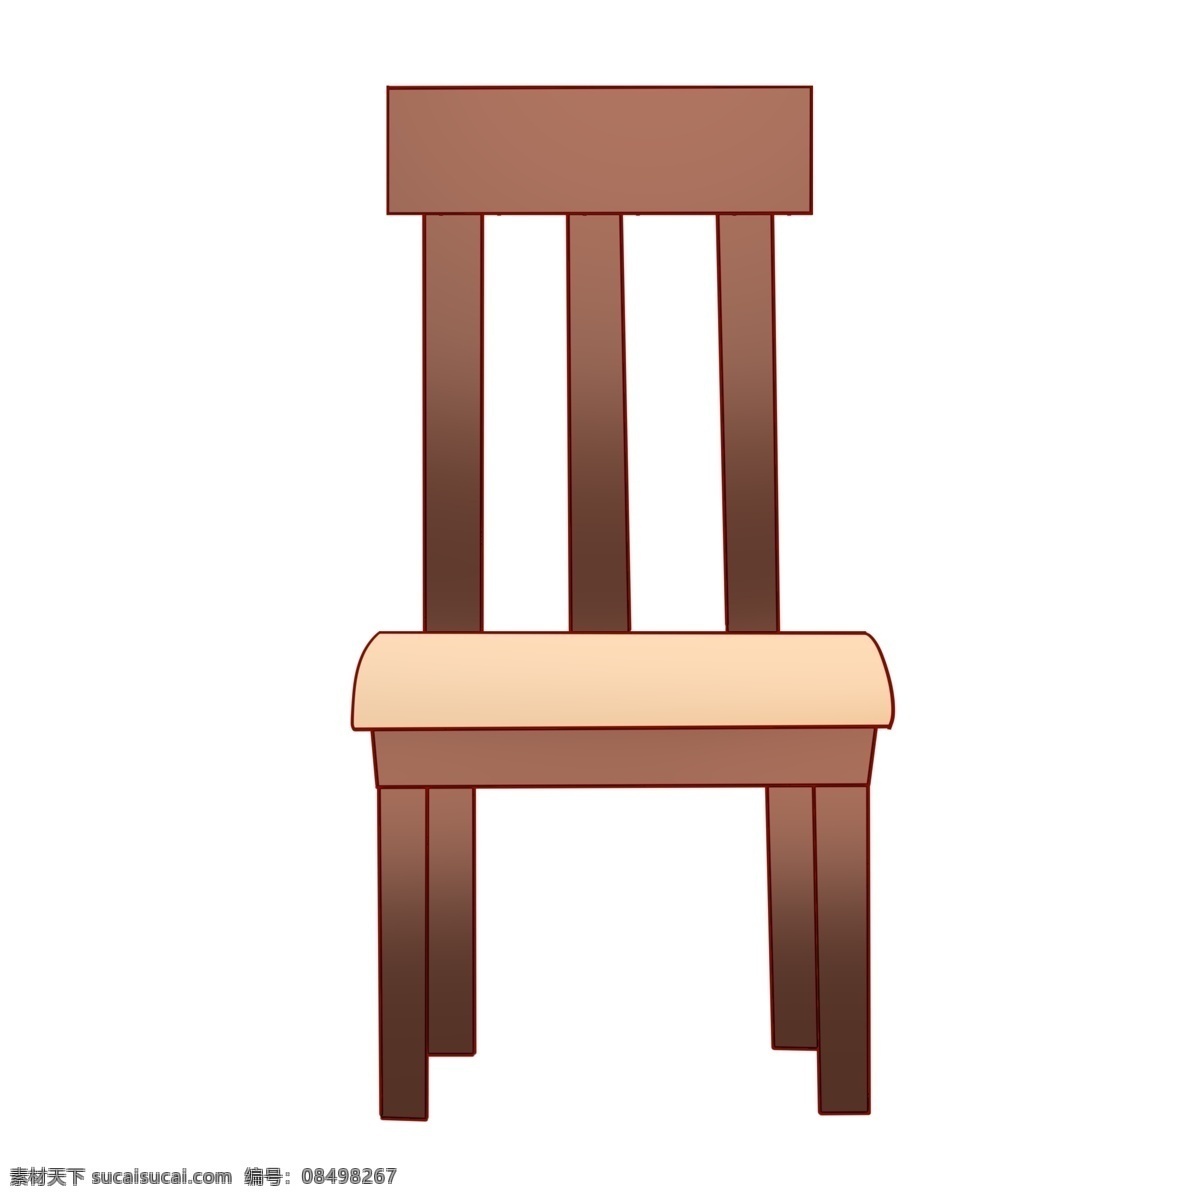 一把 实木 靠背 椅子 一把椅子 实木椅子 靠背椅子 木质椅子 木质 椅子插图 简约实木椅子 座椅